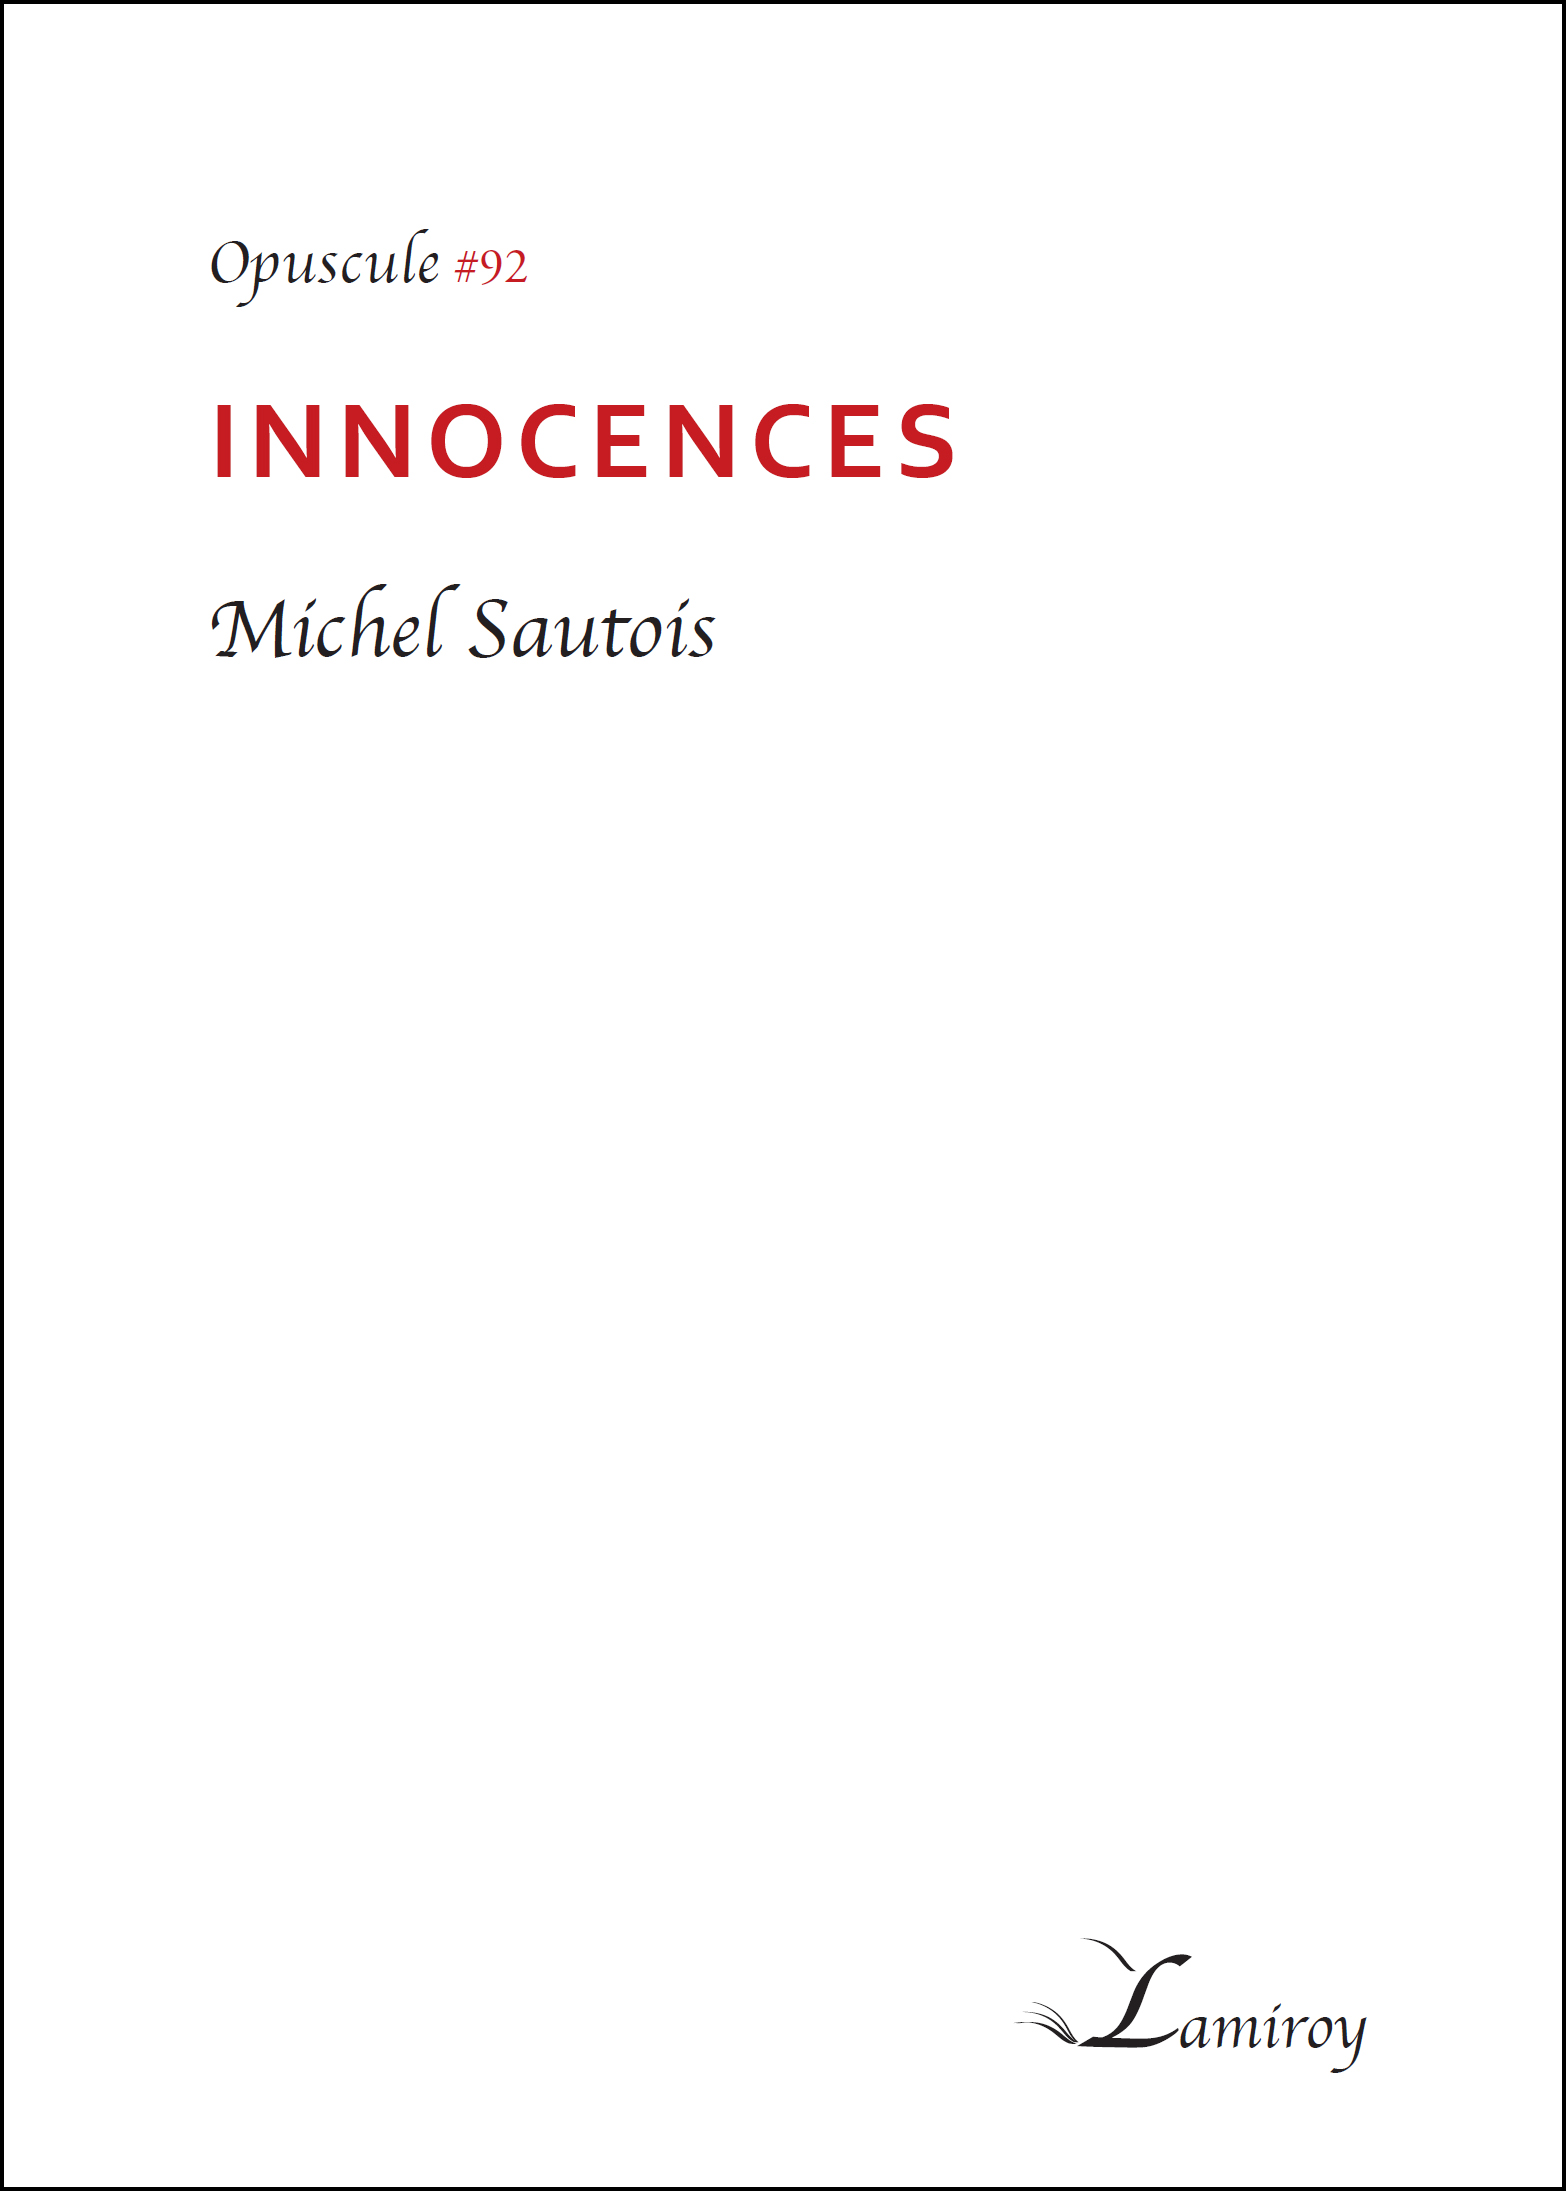 Michel Sautois Innocences HD bord noir